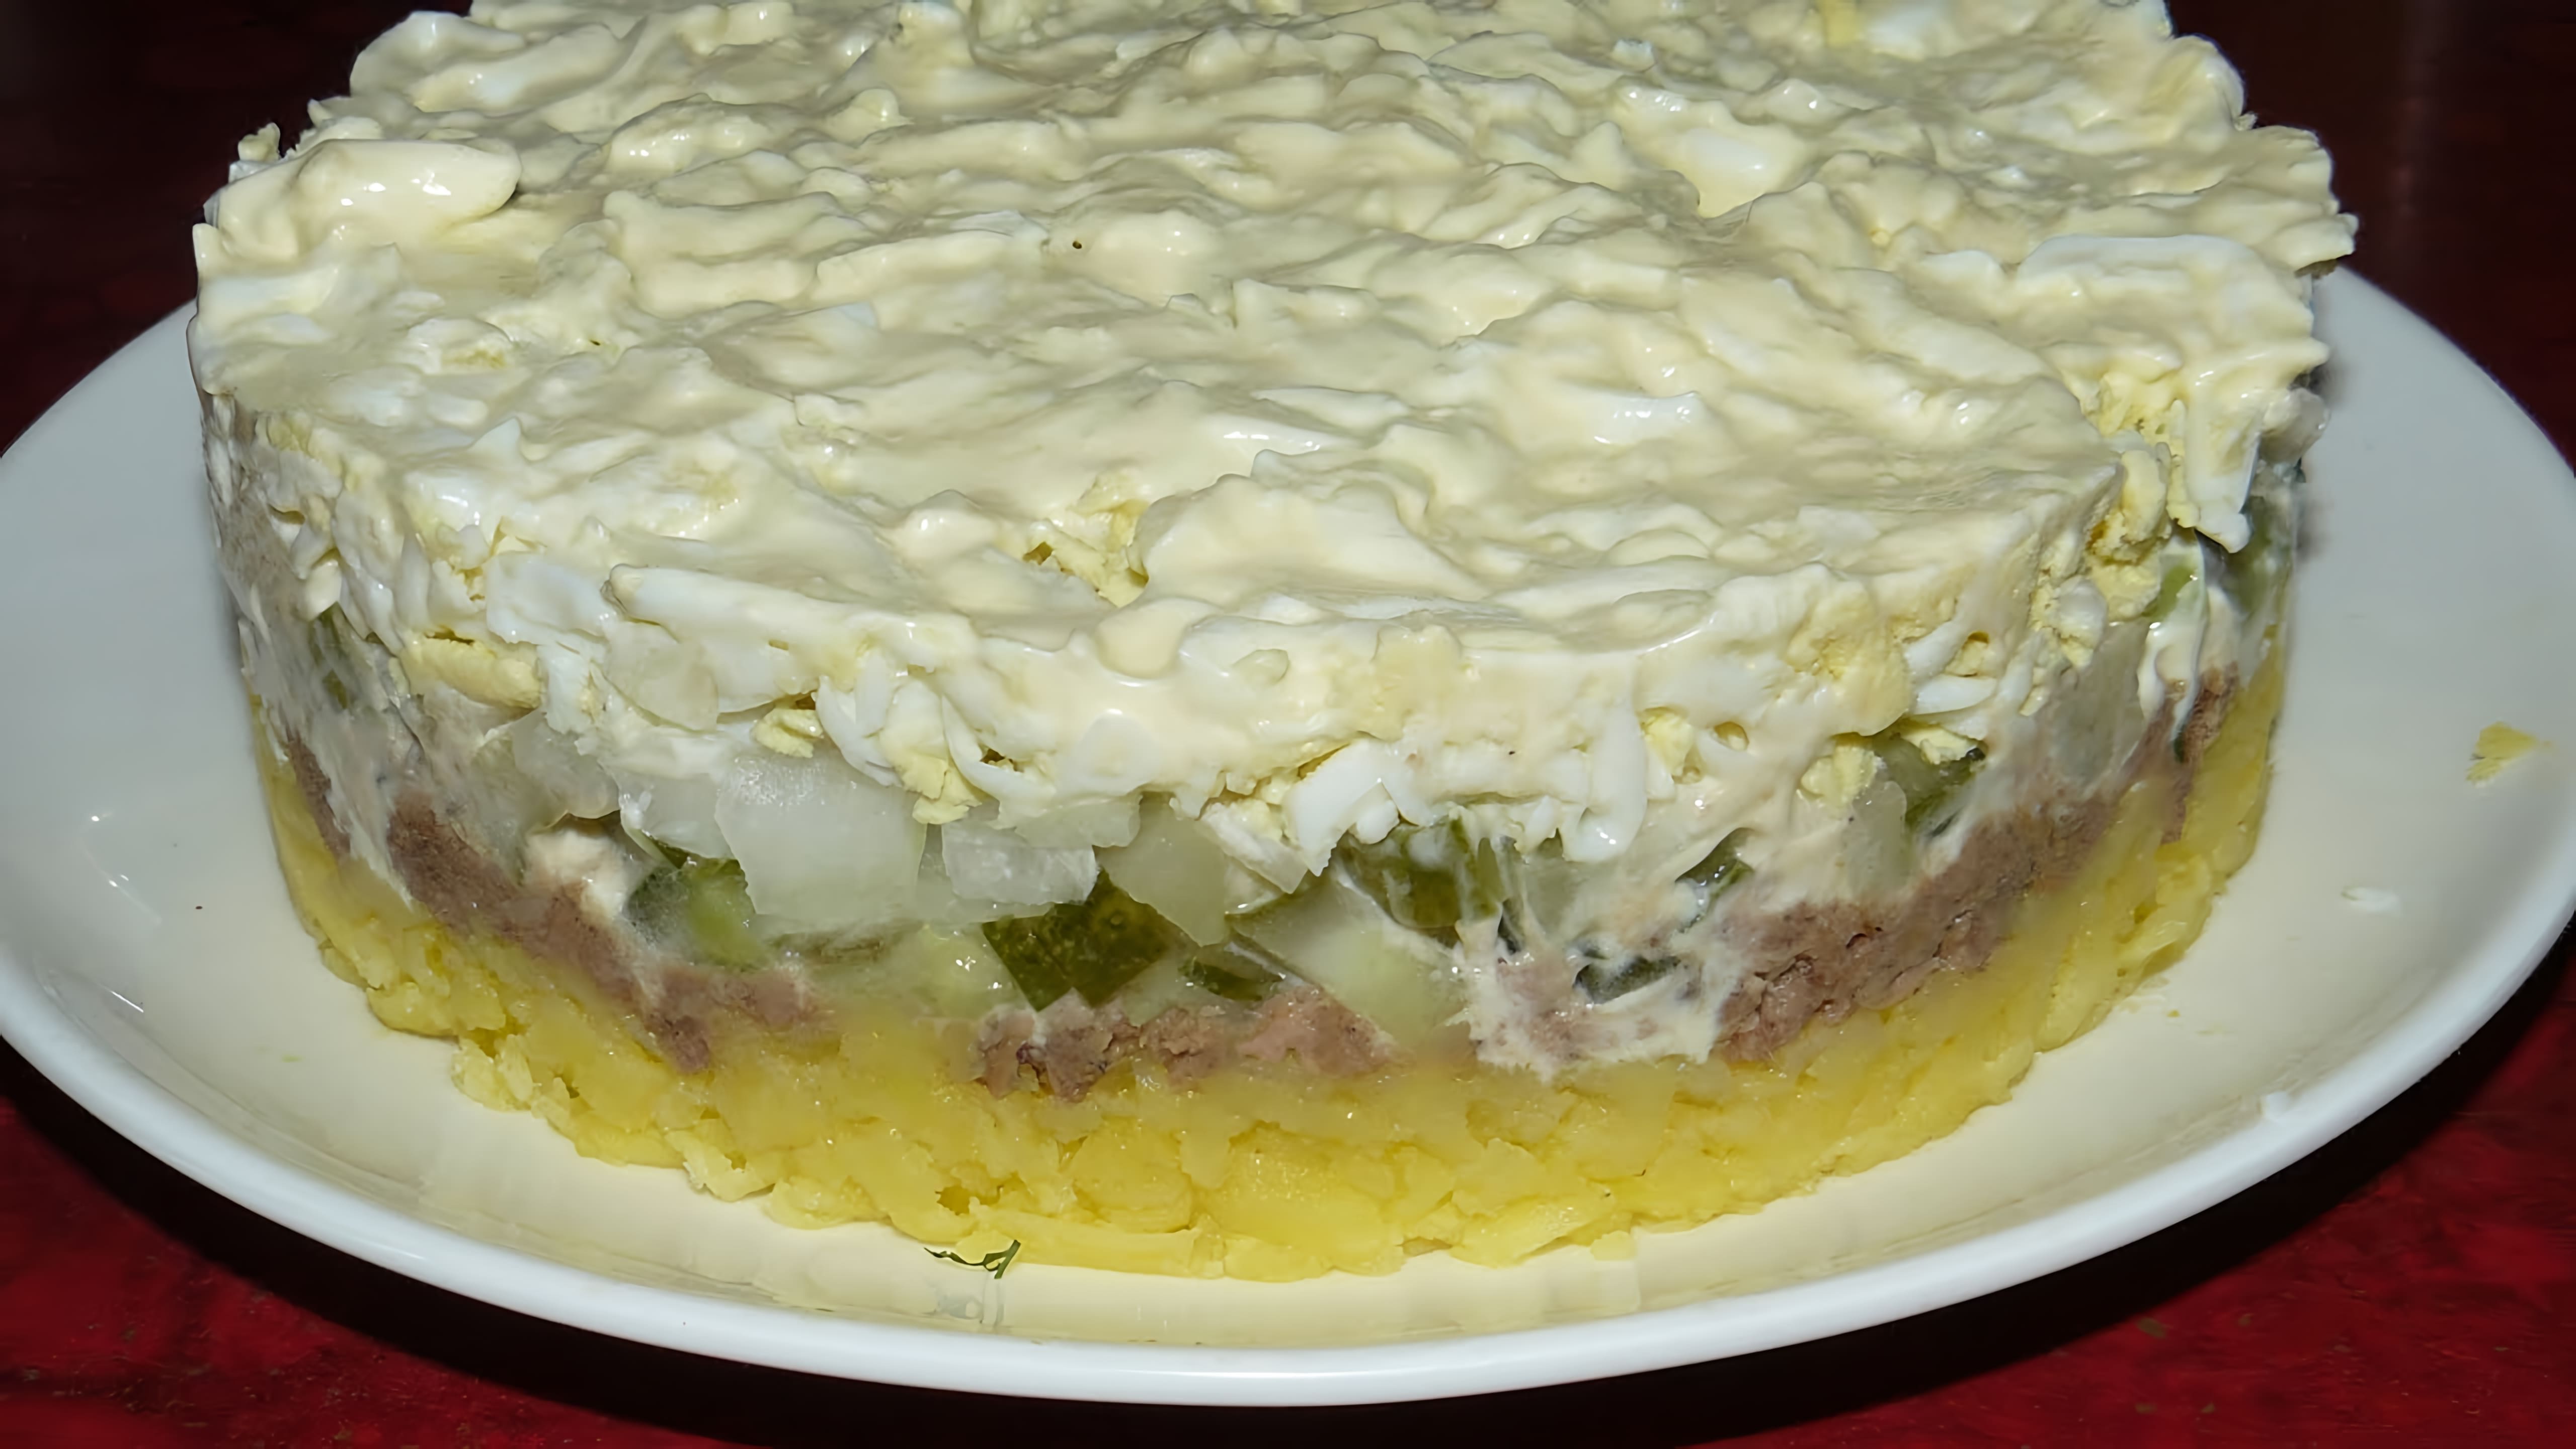 В этом видео демонстрируется рецепт приготовления слоеного салата с консервированным тунцом